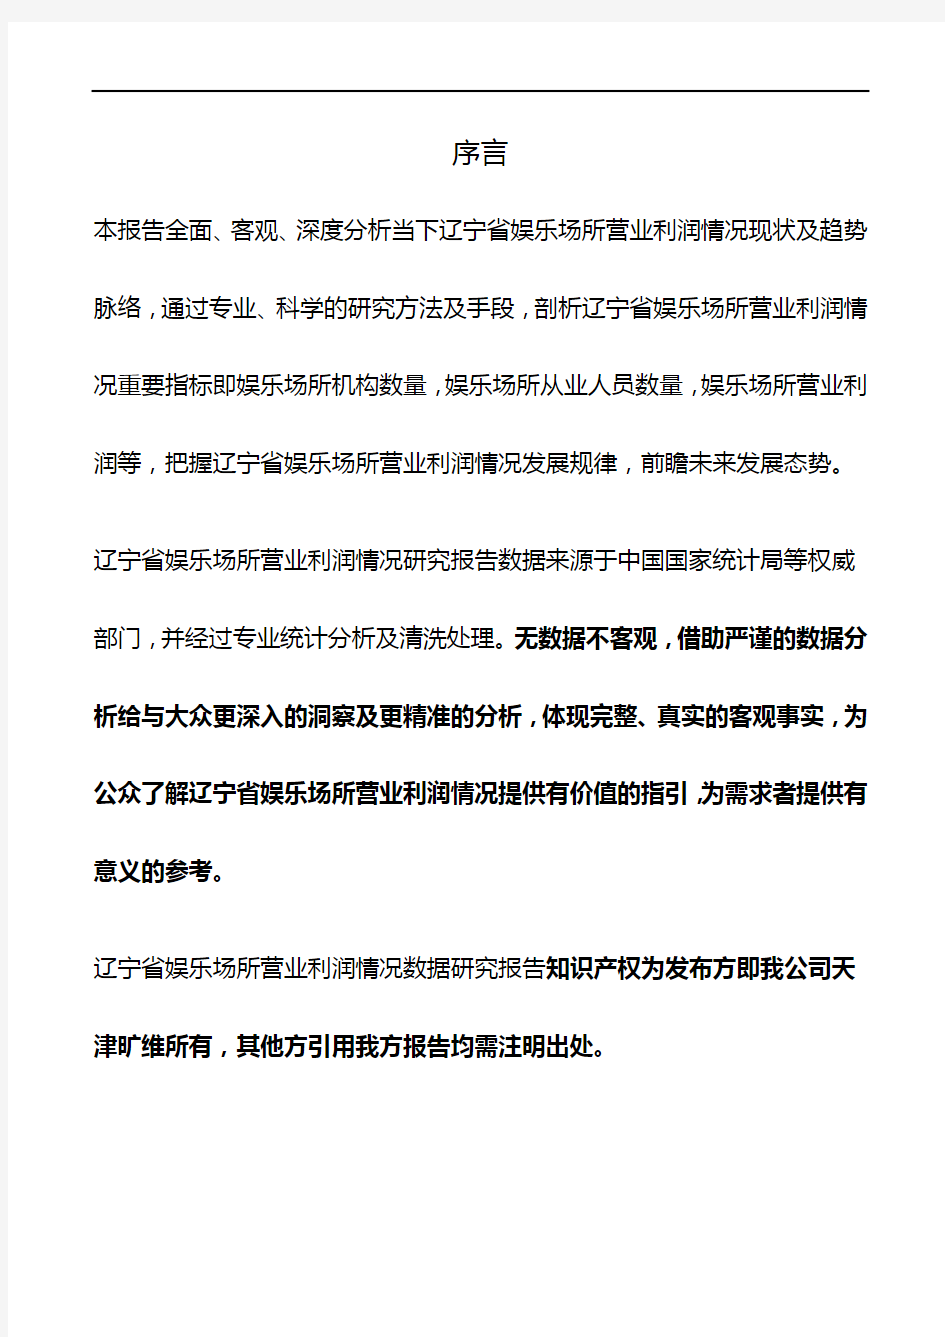 辽宁省娱乐场所营业利润情况3年数据研究报告2019版